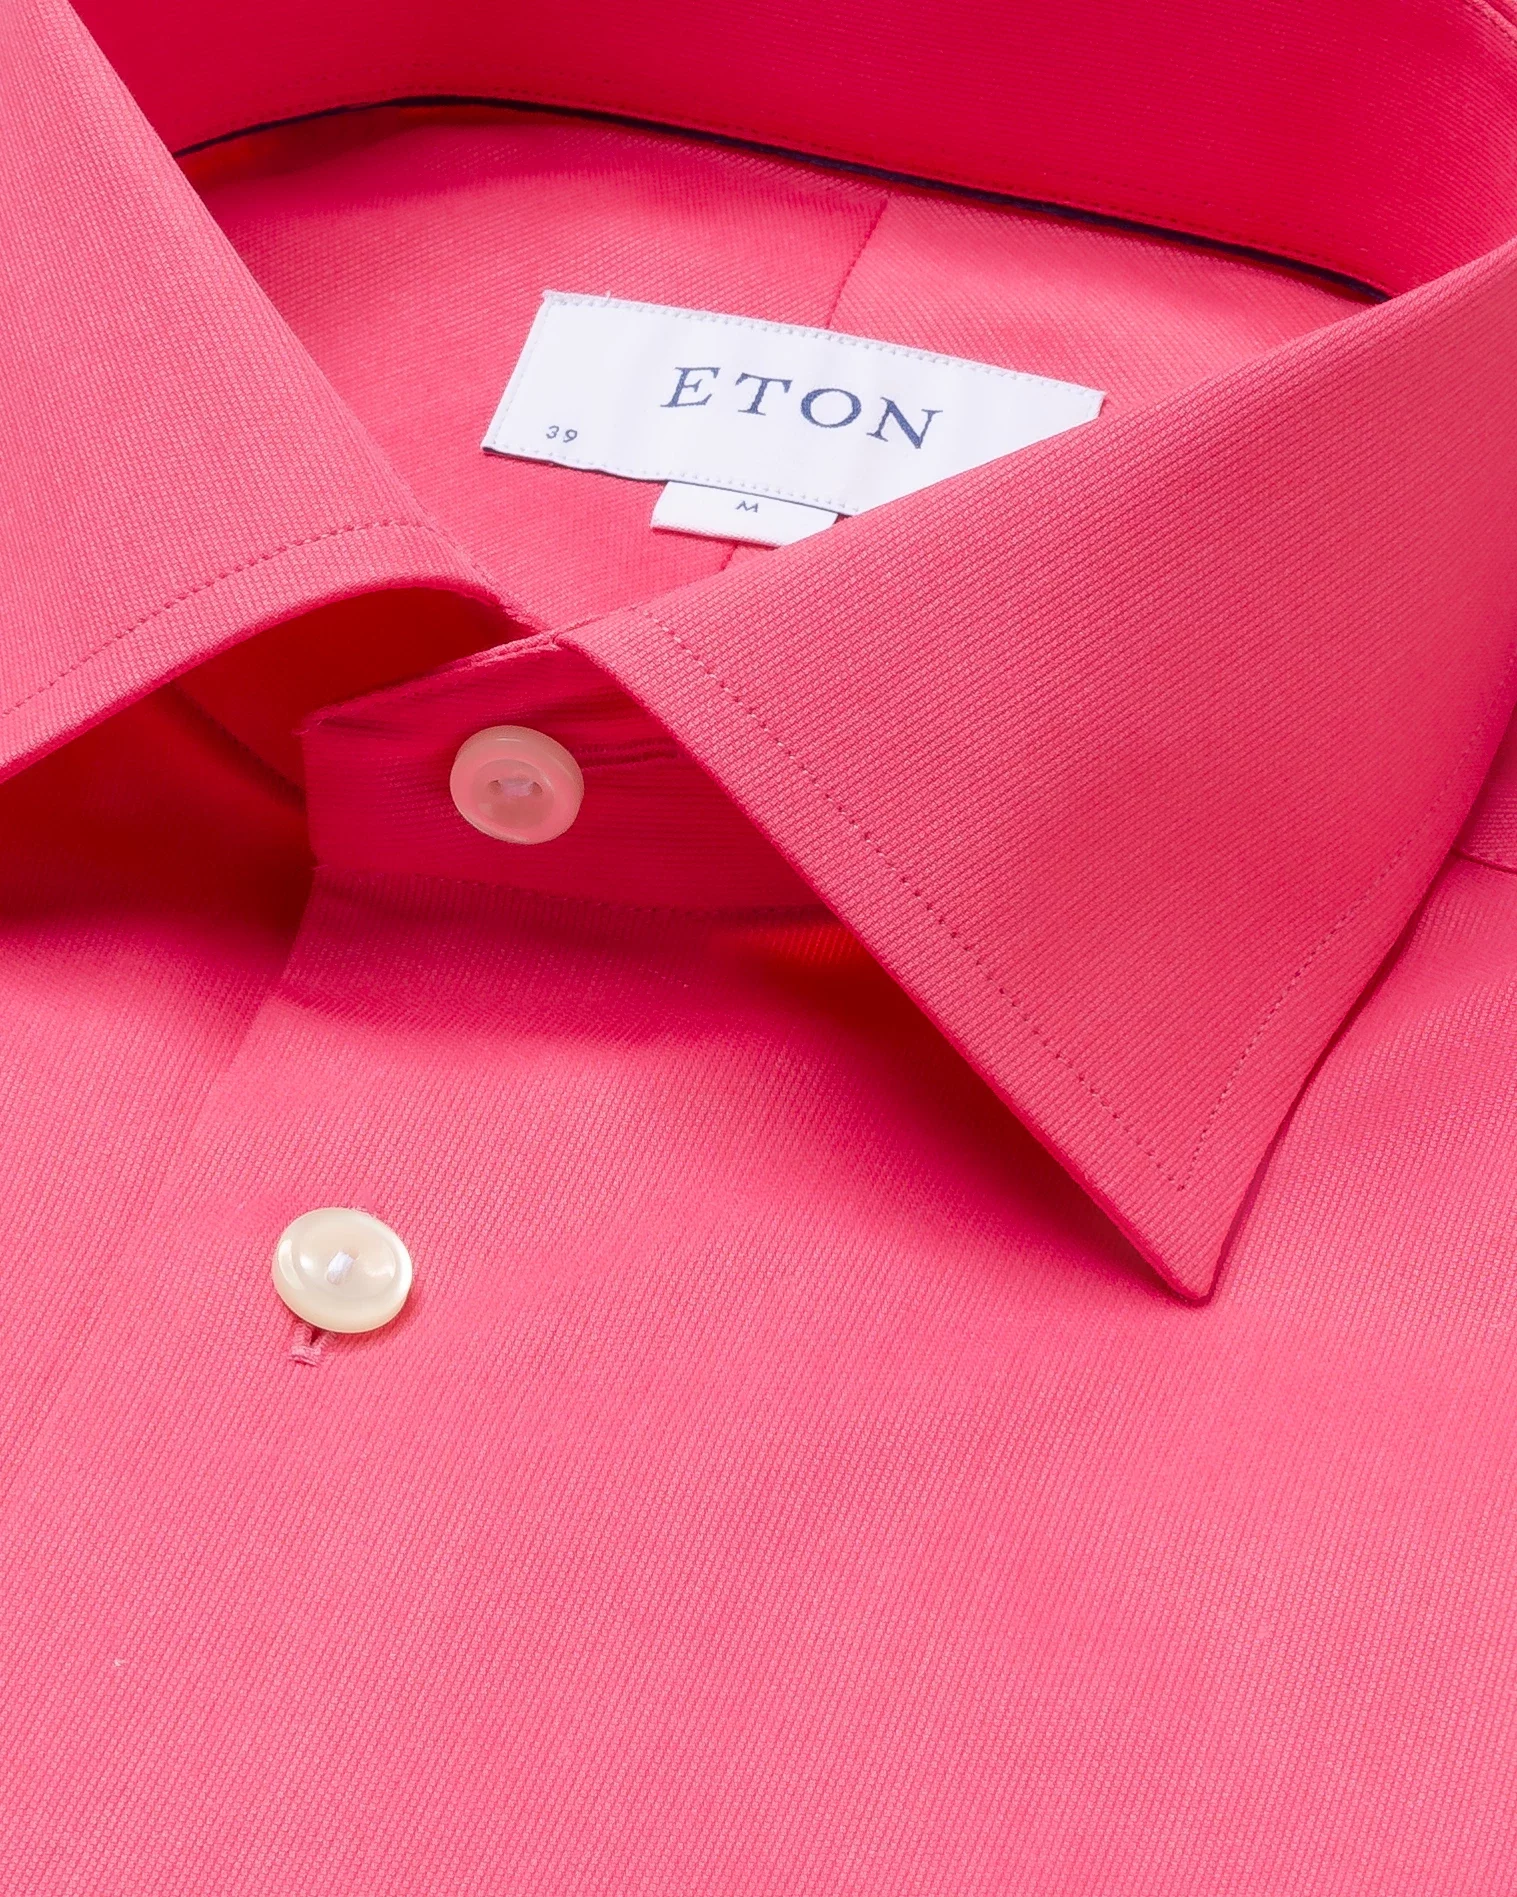 Eton - pink satin shirt